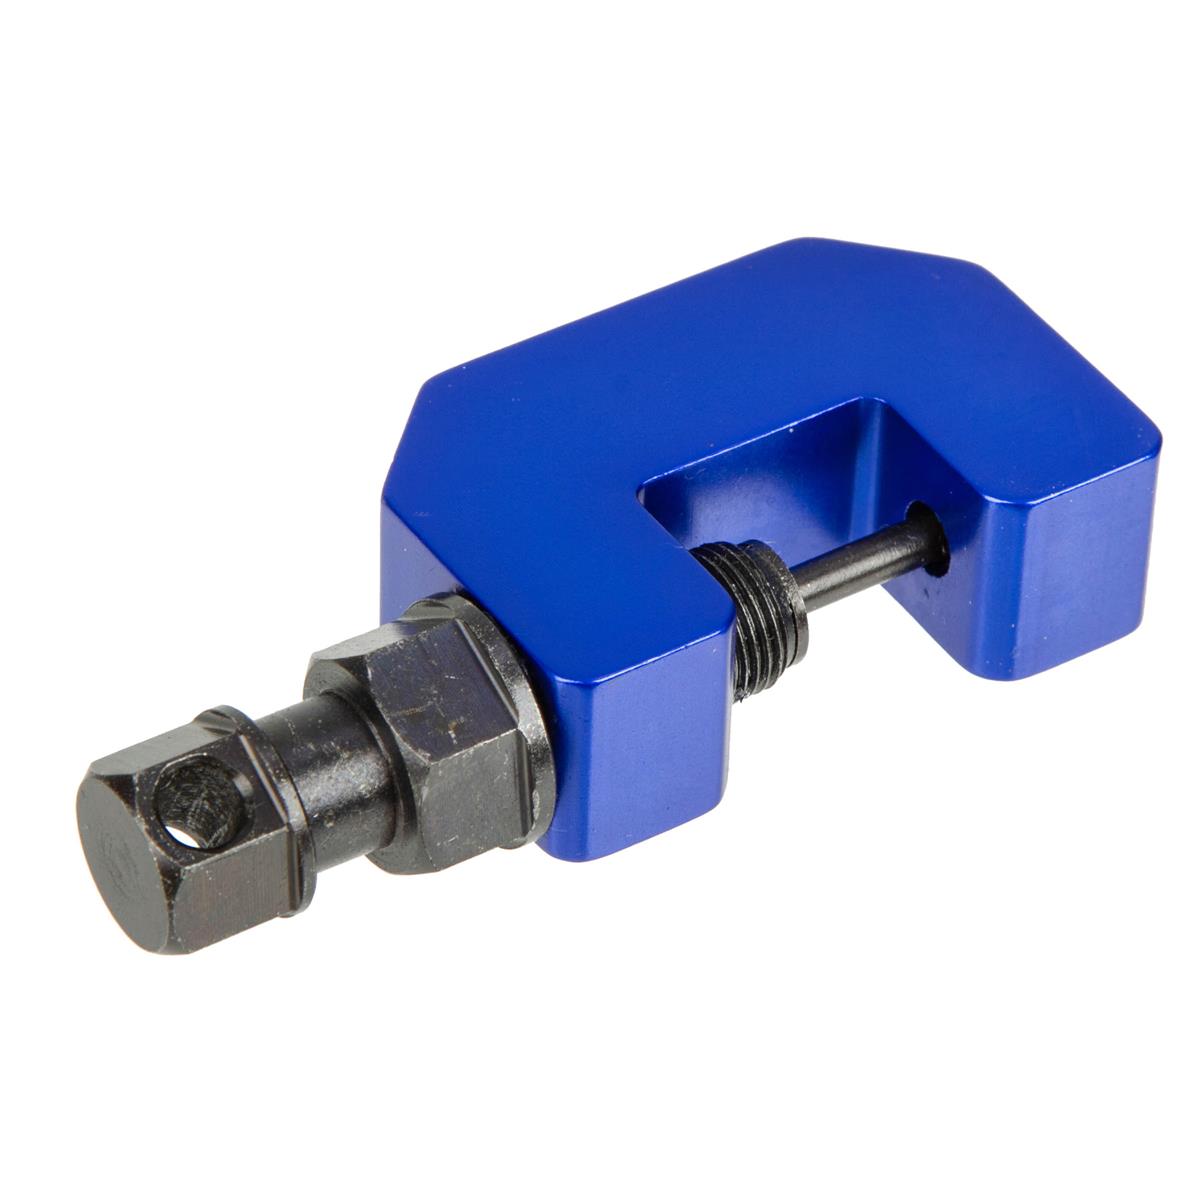 DRC Chain Cutter Mini Blue